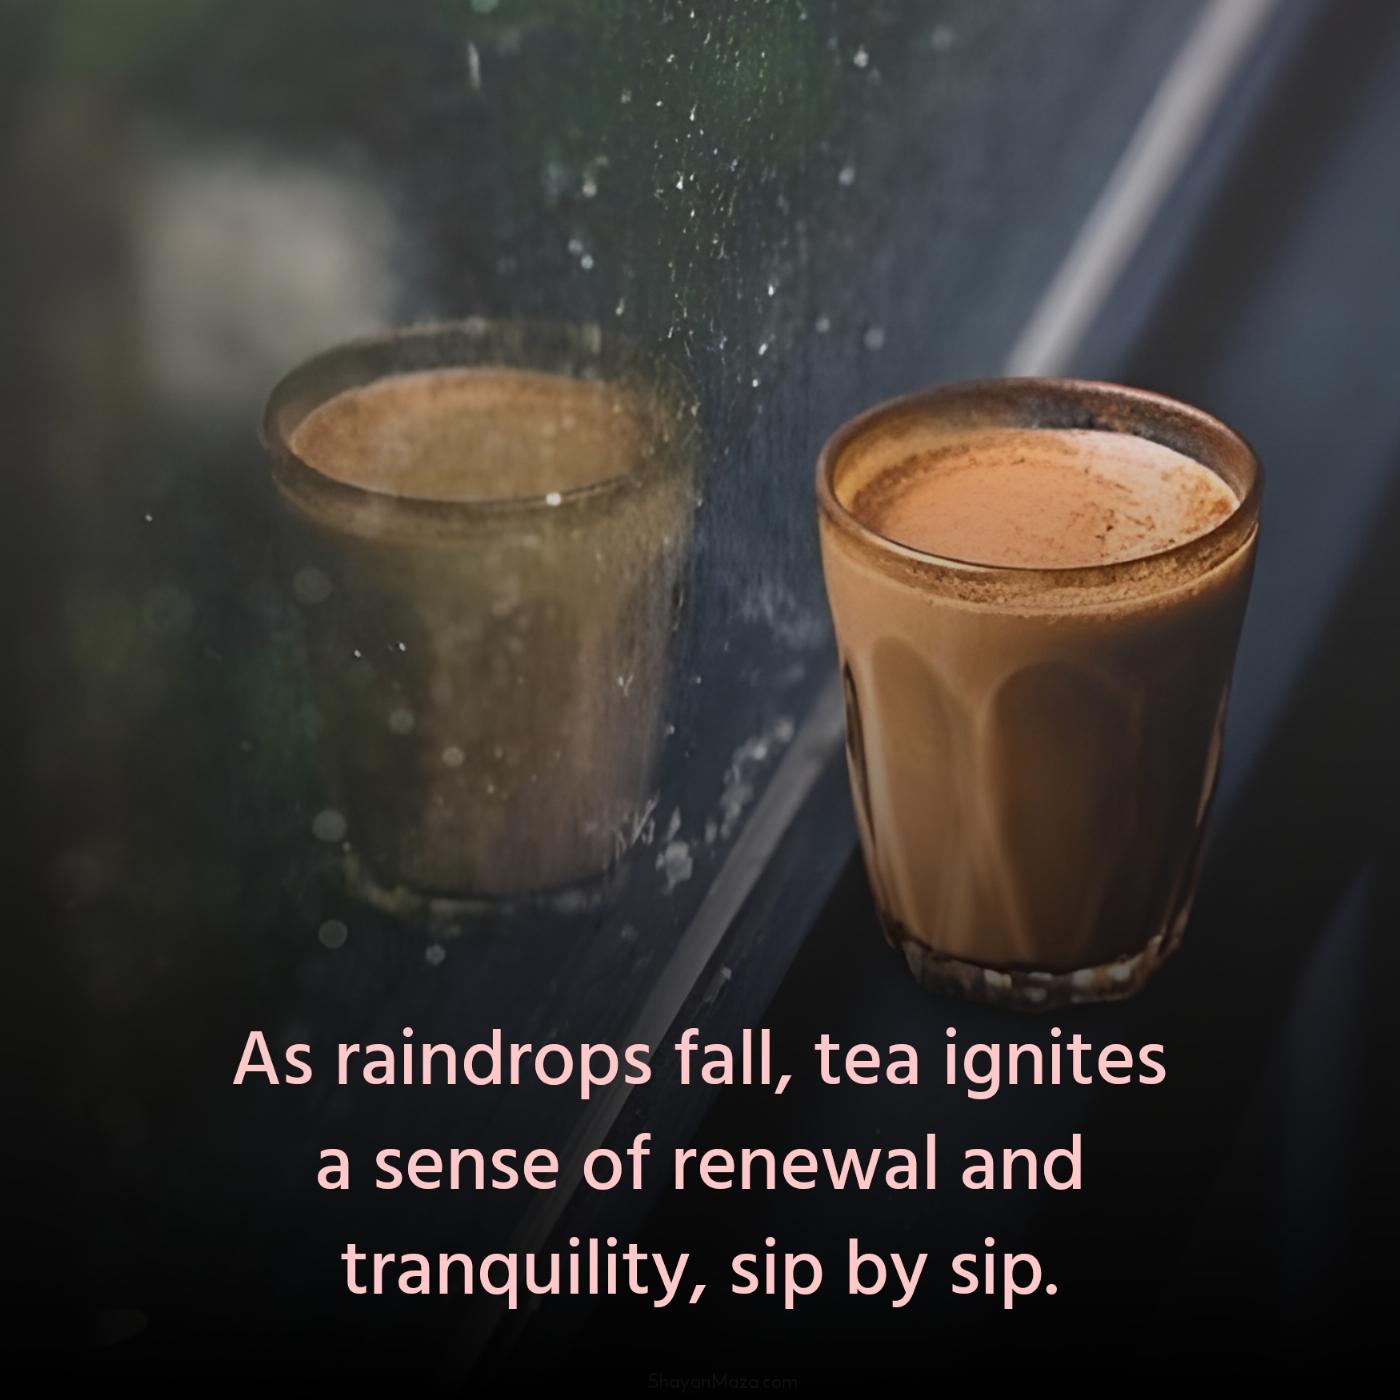 As raindrops fall tea ignites a sense of renewal and tranquility